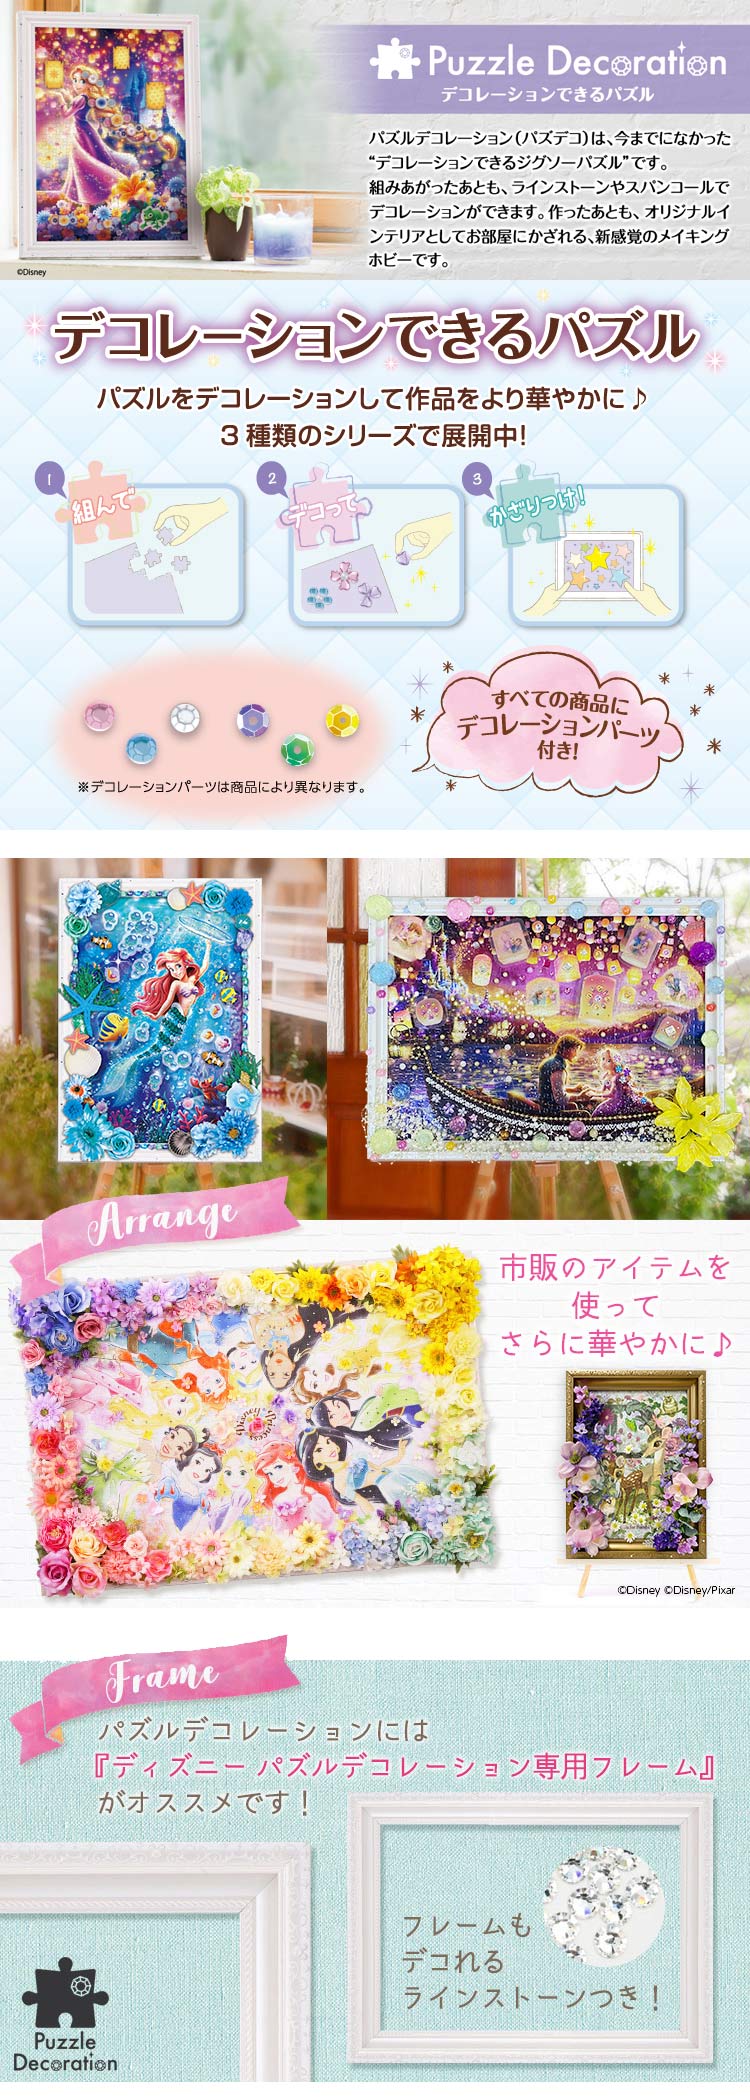 Epo 97 001 ディズニー Floral Dream フローラル ドリーム プリンセス 1000ピース エポック社 の商品詳細ページです 日本最大級のジグソーパズル通販専門店 ジグソークラブ